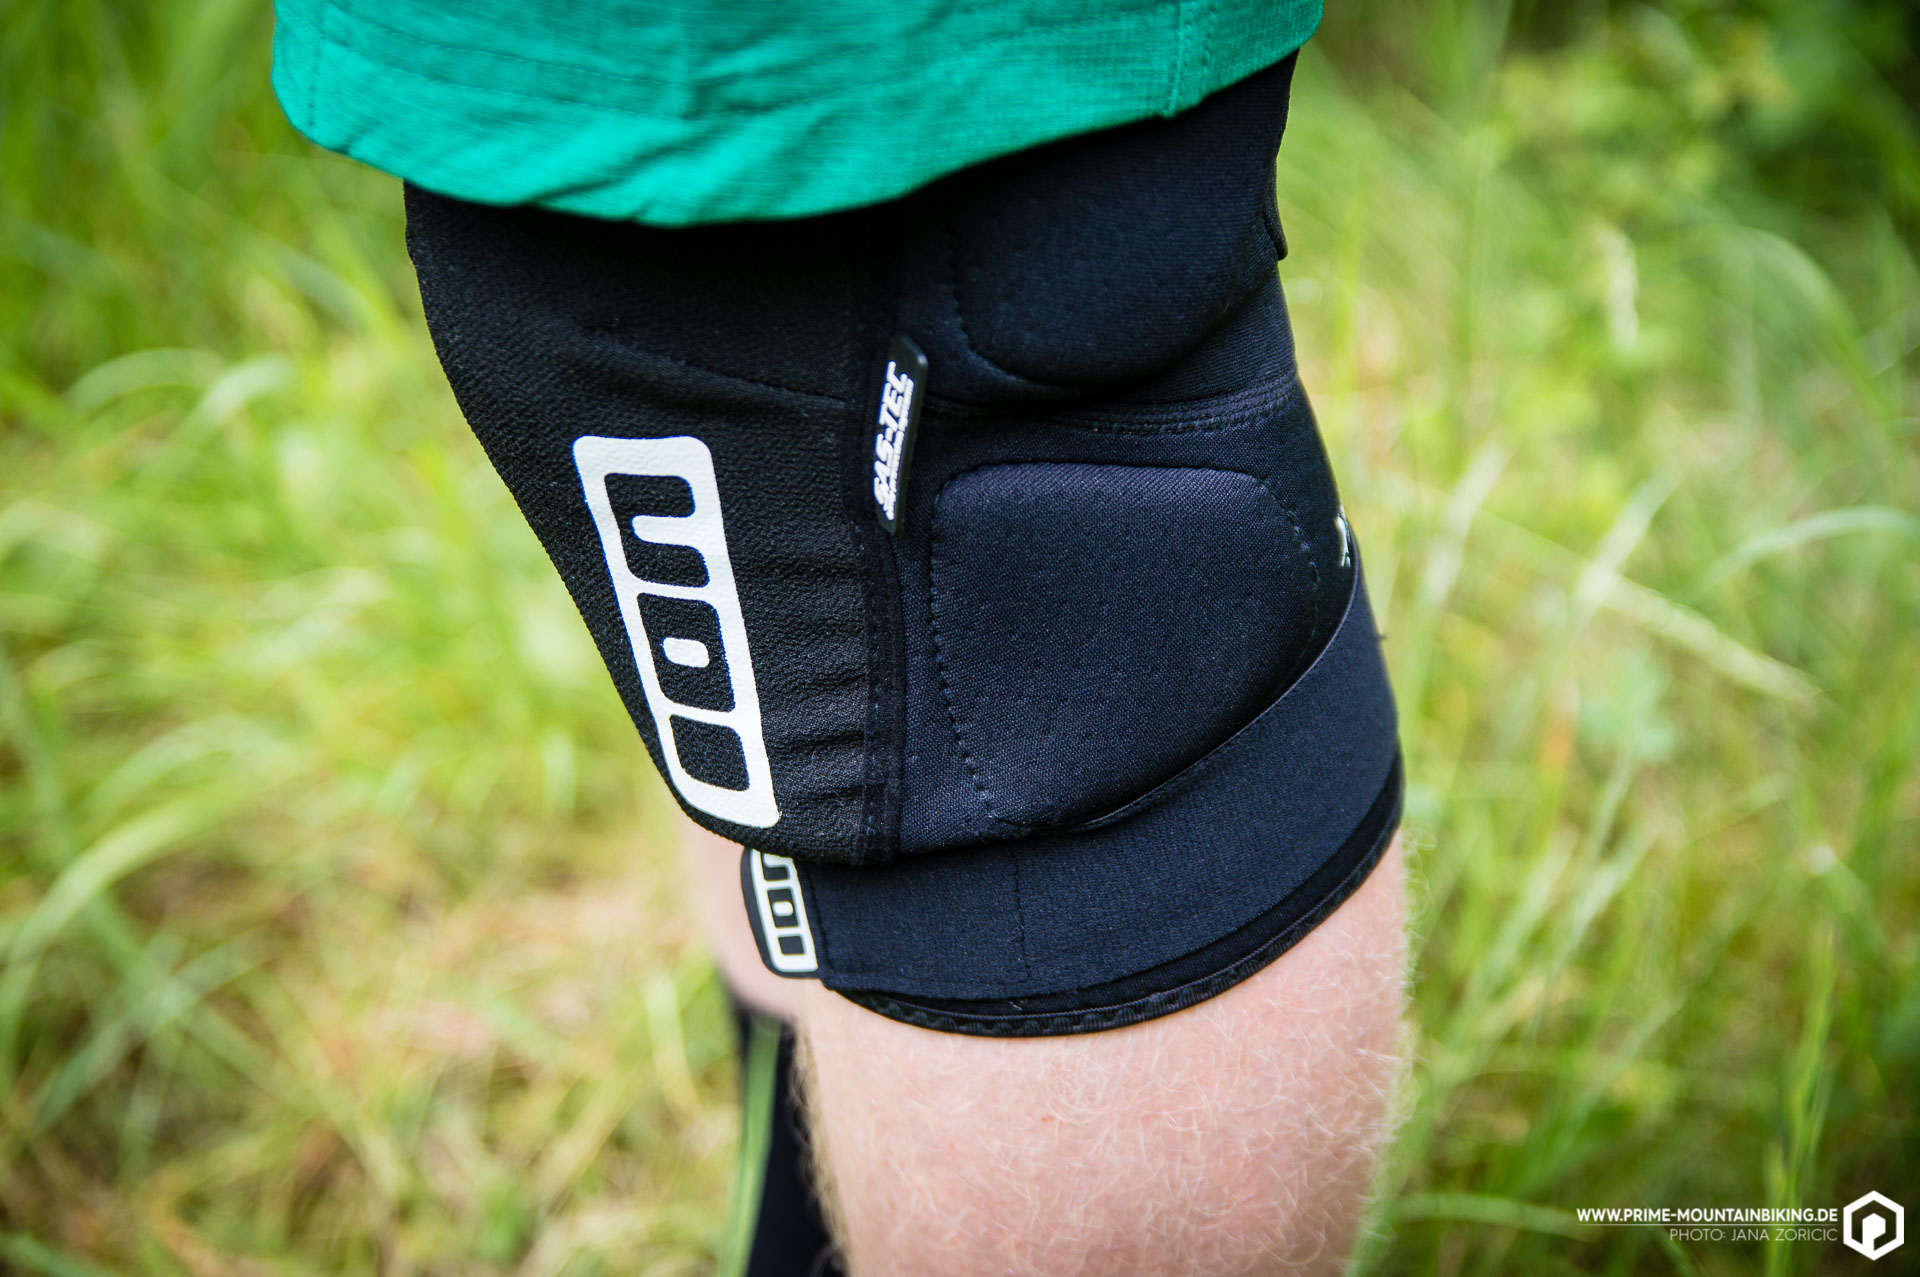 Die seitlichen Pads sind aus Eva-Schaum und bieten umfassenden Schutz für dein Knie.